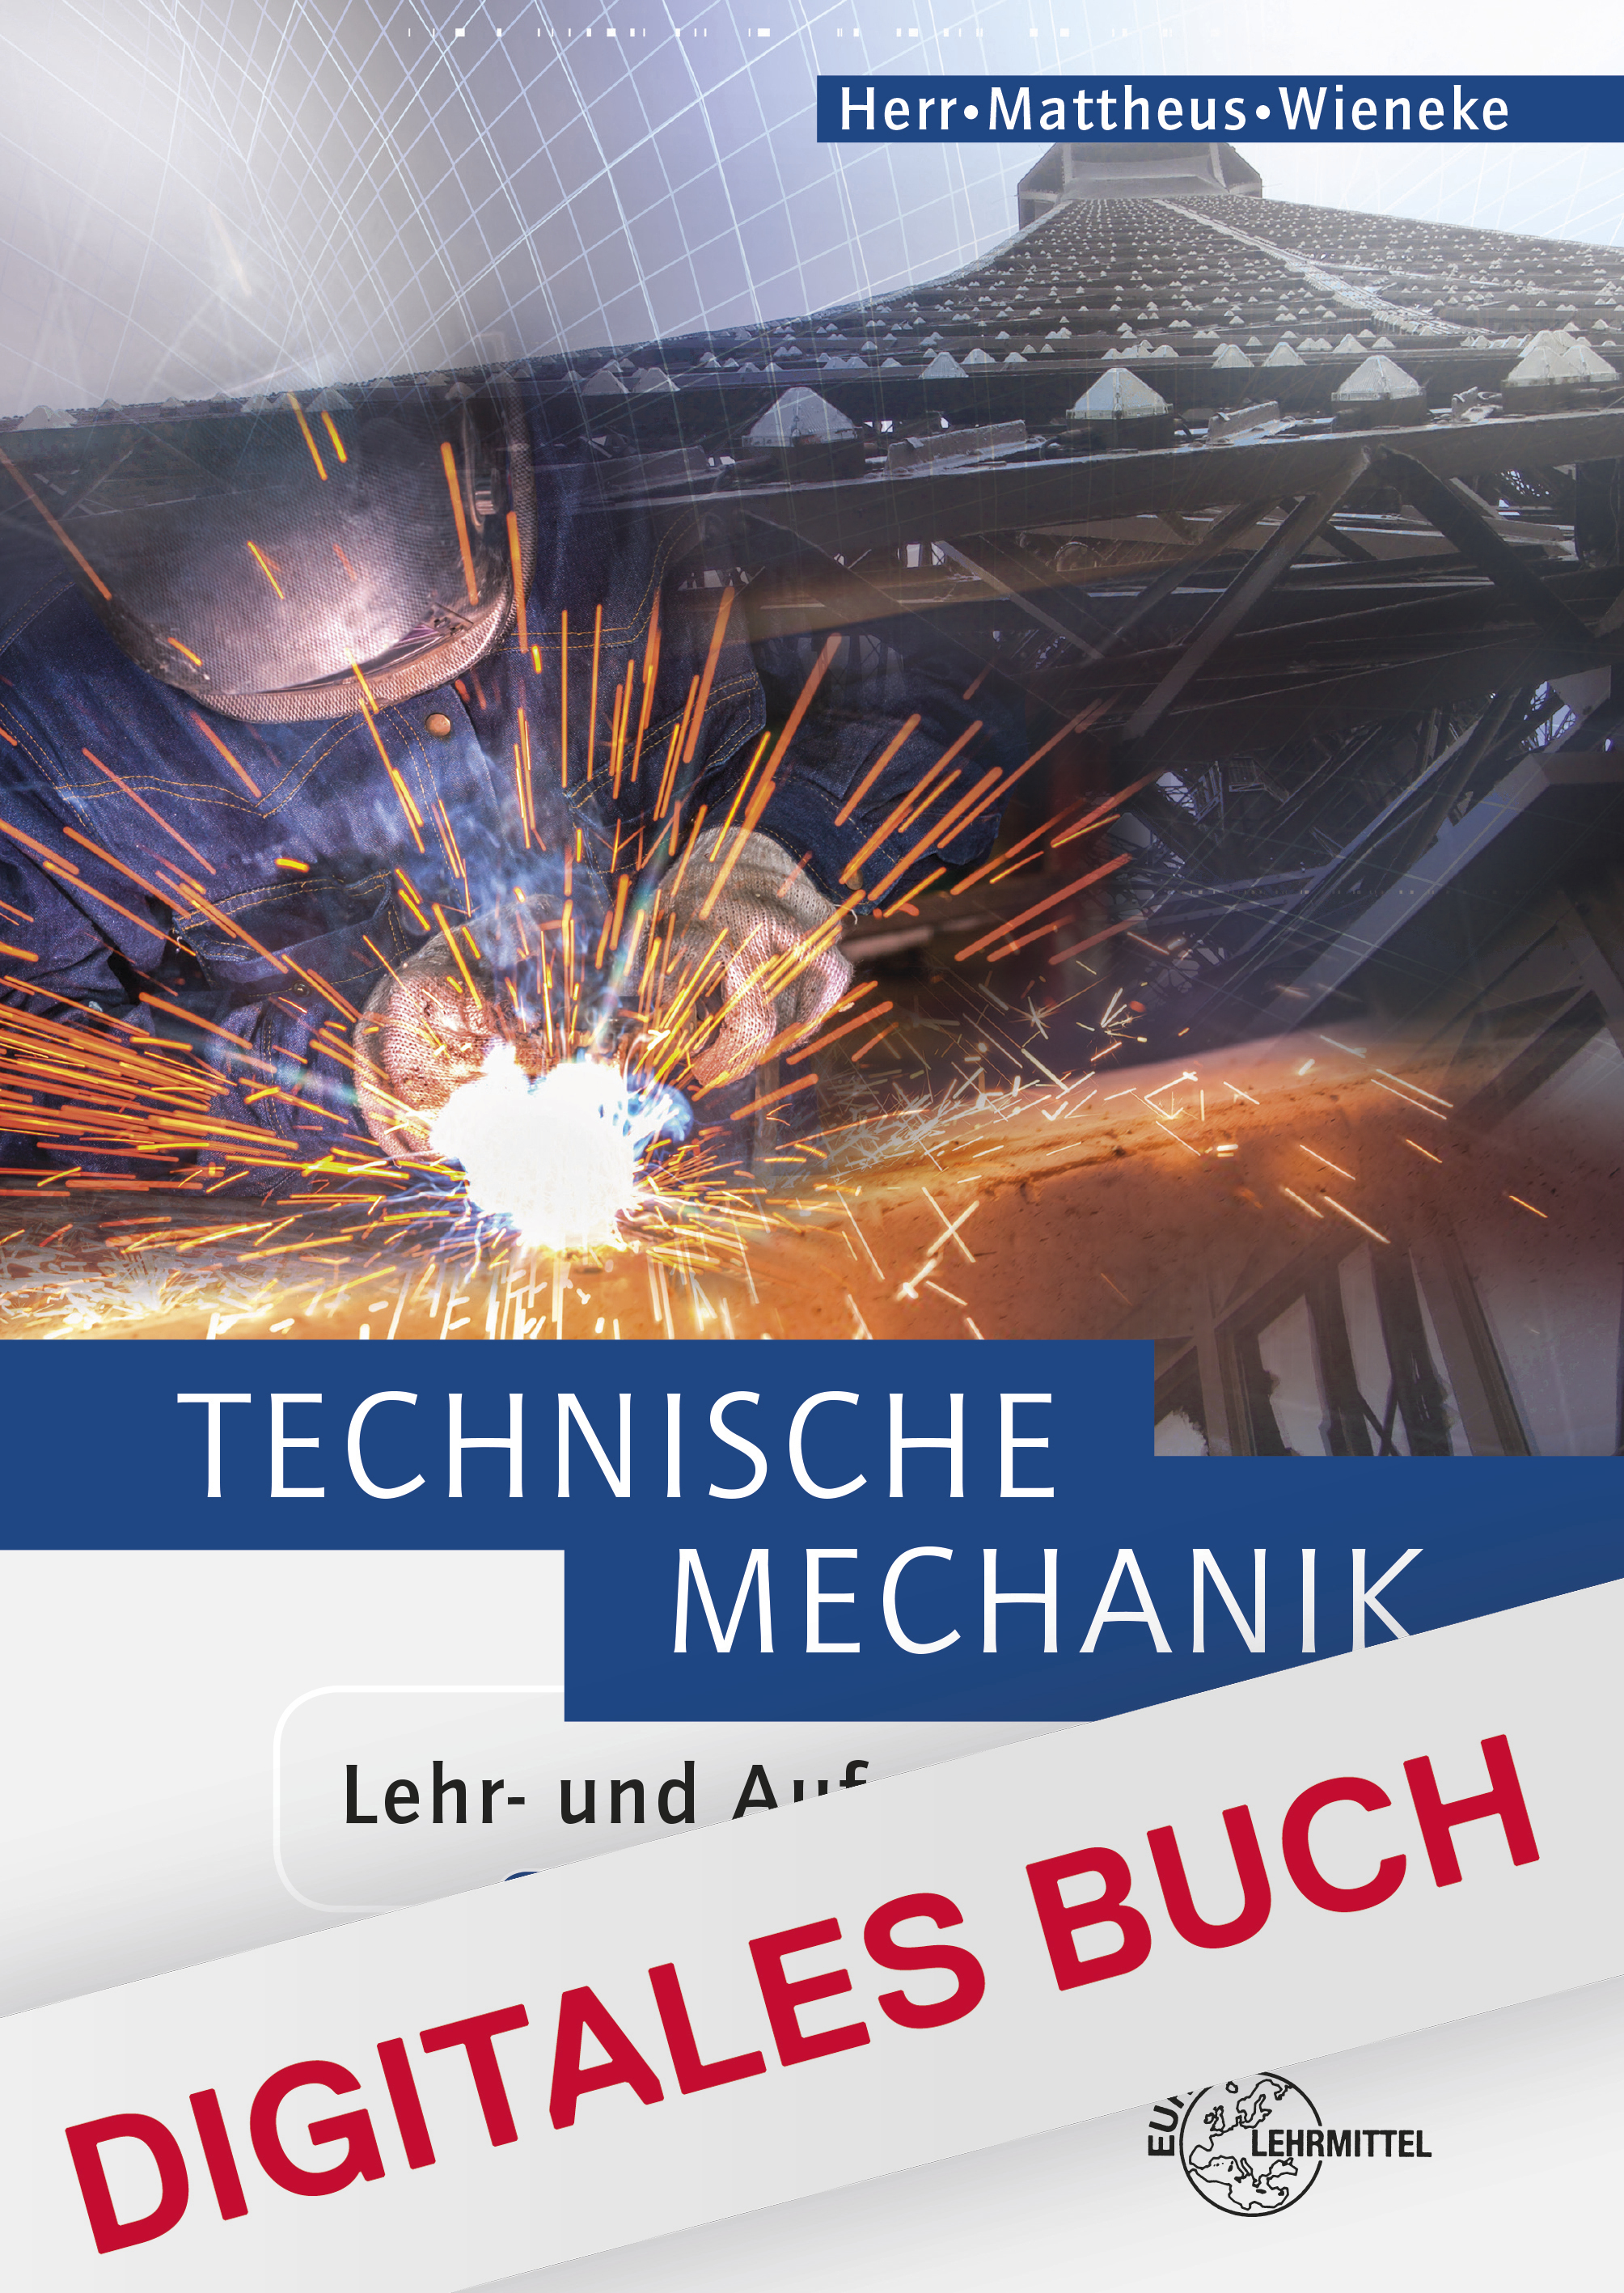 Technische Mechanik Lehr- und Aufgabenbuch - Digitales Buch